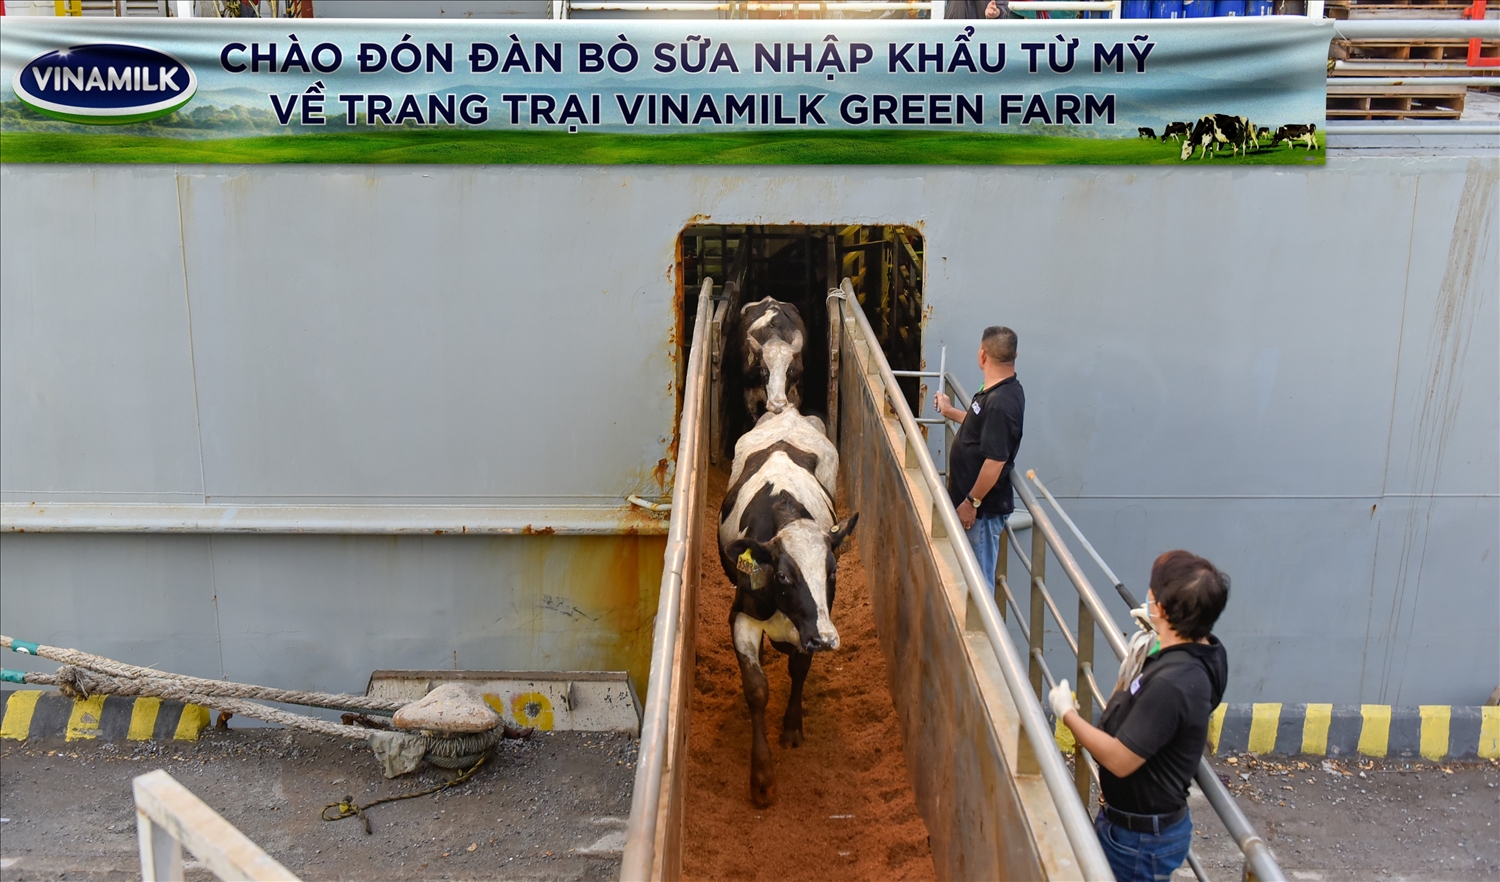 Liên tục trong 2 ngày 6 và 7/7, đàn bò tơ và bò mang thai nhập khẩu từ Mỹ đã cập cảng Nghi Sơn và Dung Quất để về mái nhà mới là các trang trại Vinamilk Green Farm tại Thanh Hóa và Quảng Ngãi